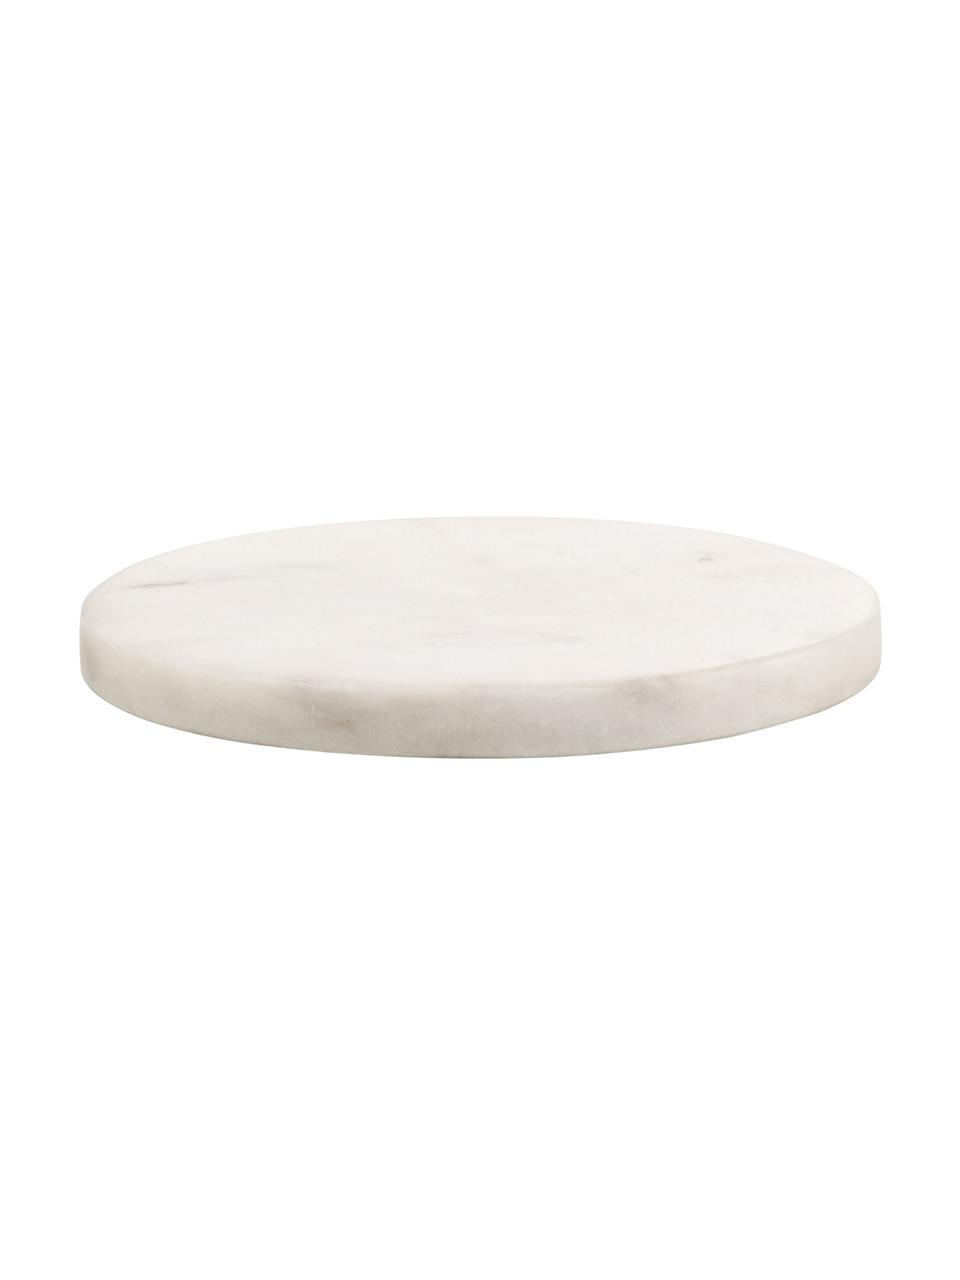 Marmor-Untersetzer Guda in Weiß, 4 Stück, Marmor, Weißer Marmor, Ø 10 cm